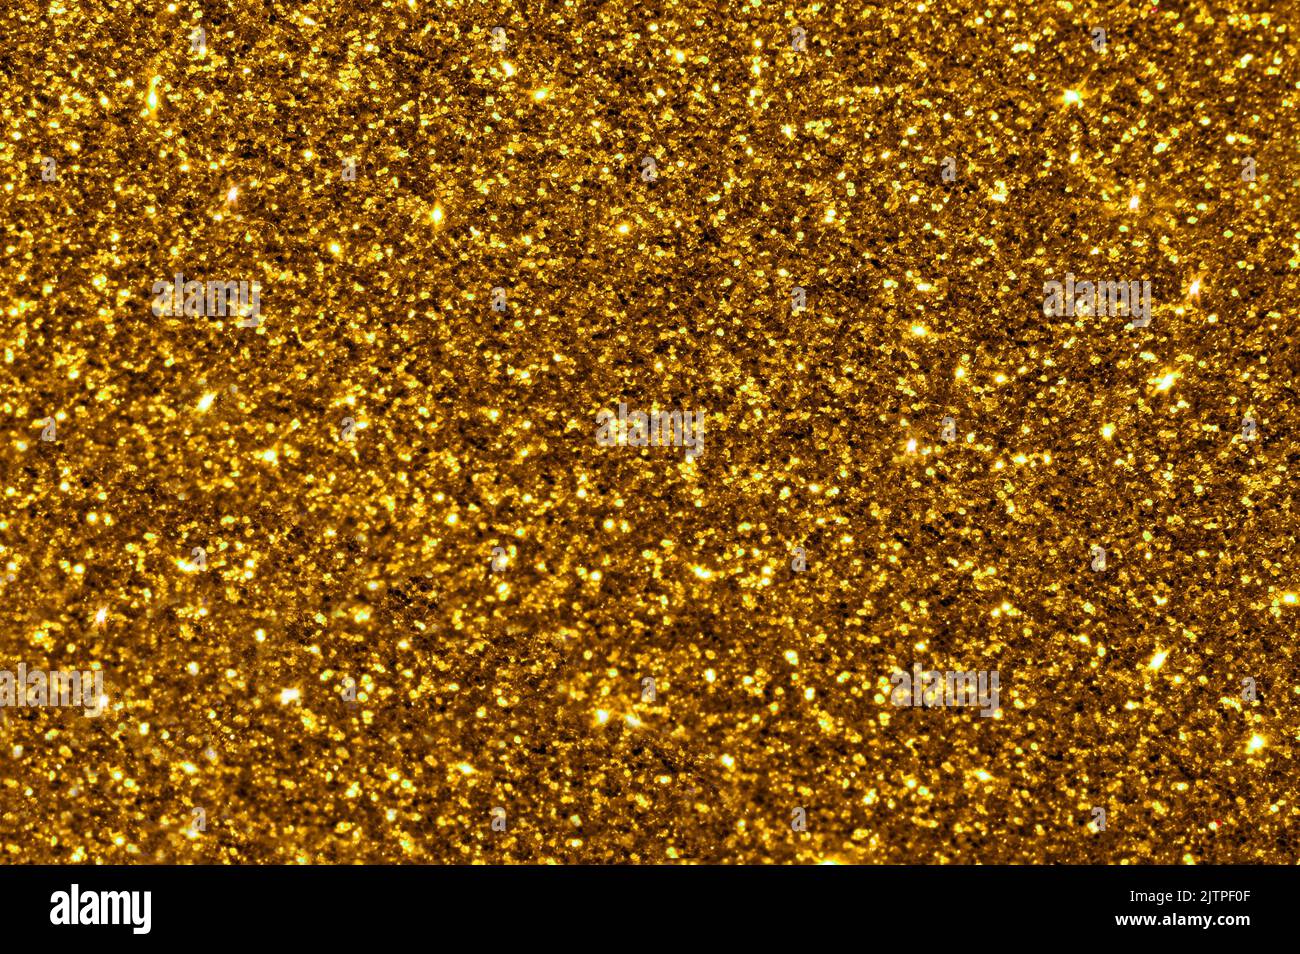 Goldgelber Glitter Bokeh Hintergrund. Das Foto kann für Neujahr, Weihnachten und alle Festlichkeiten verwendet werden. Stockfoto